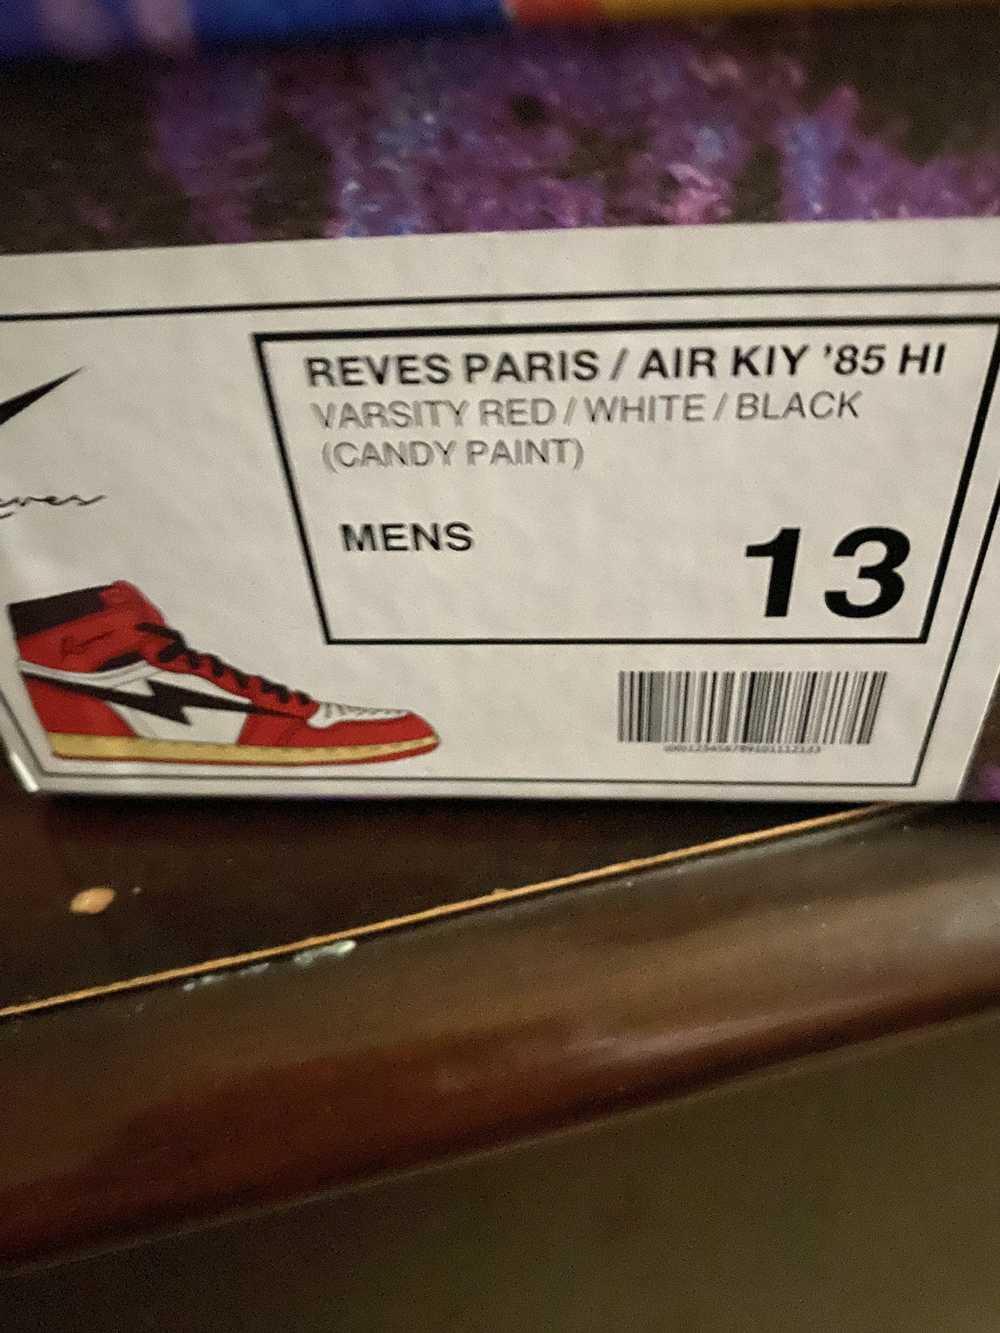 Reves Paris Reves Paris / Air Kiy ‘85 Hi - image 9